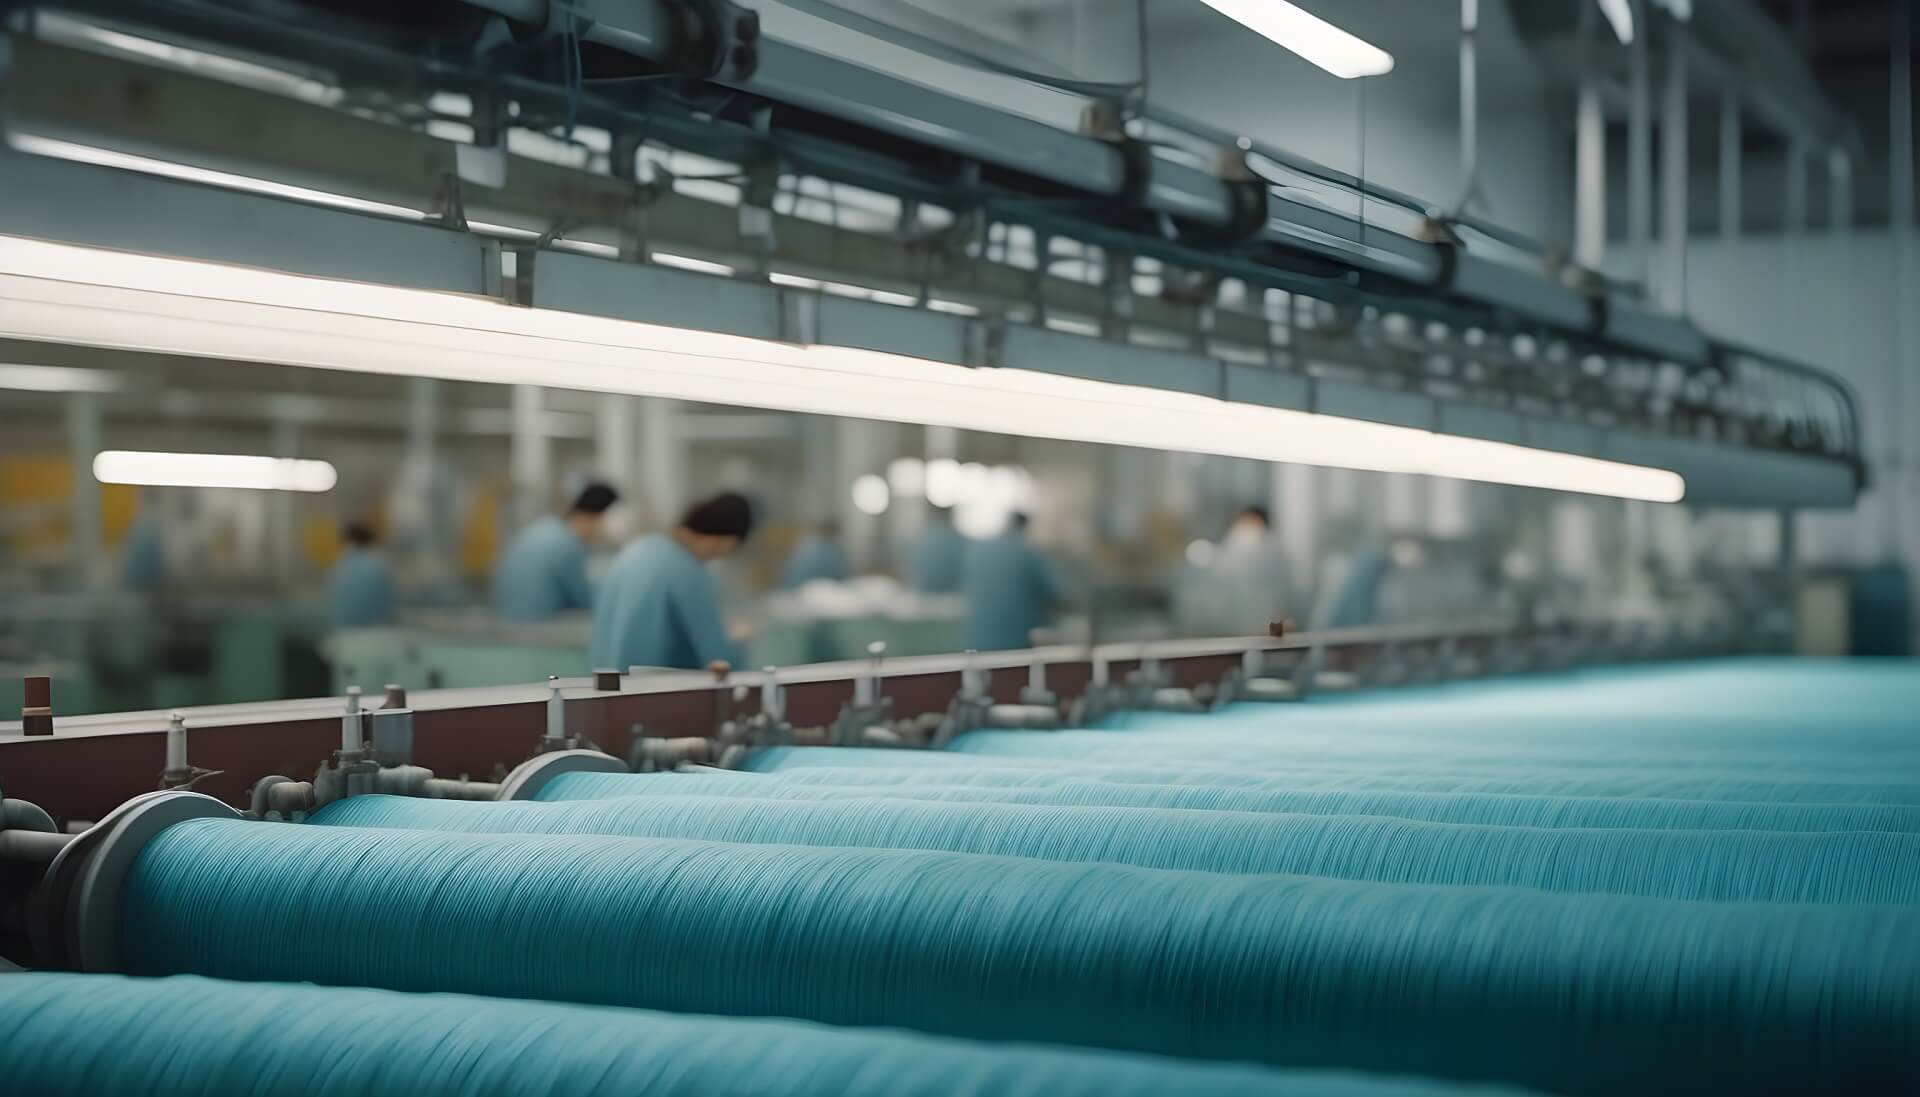 Экологический след текстильной промышленности. Проблемы и перспективы устойчивого производства одежды и текстиля.